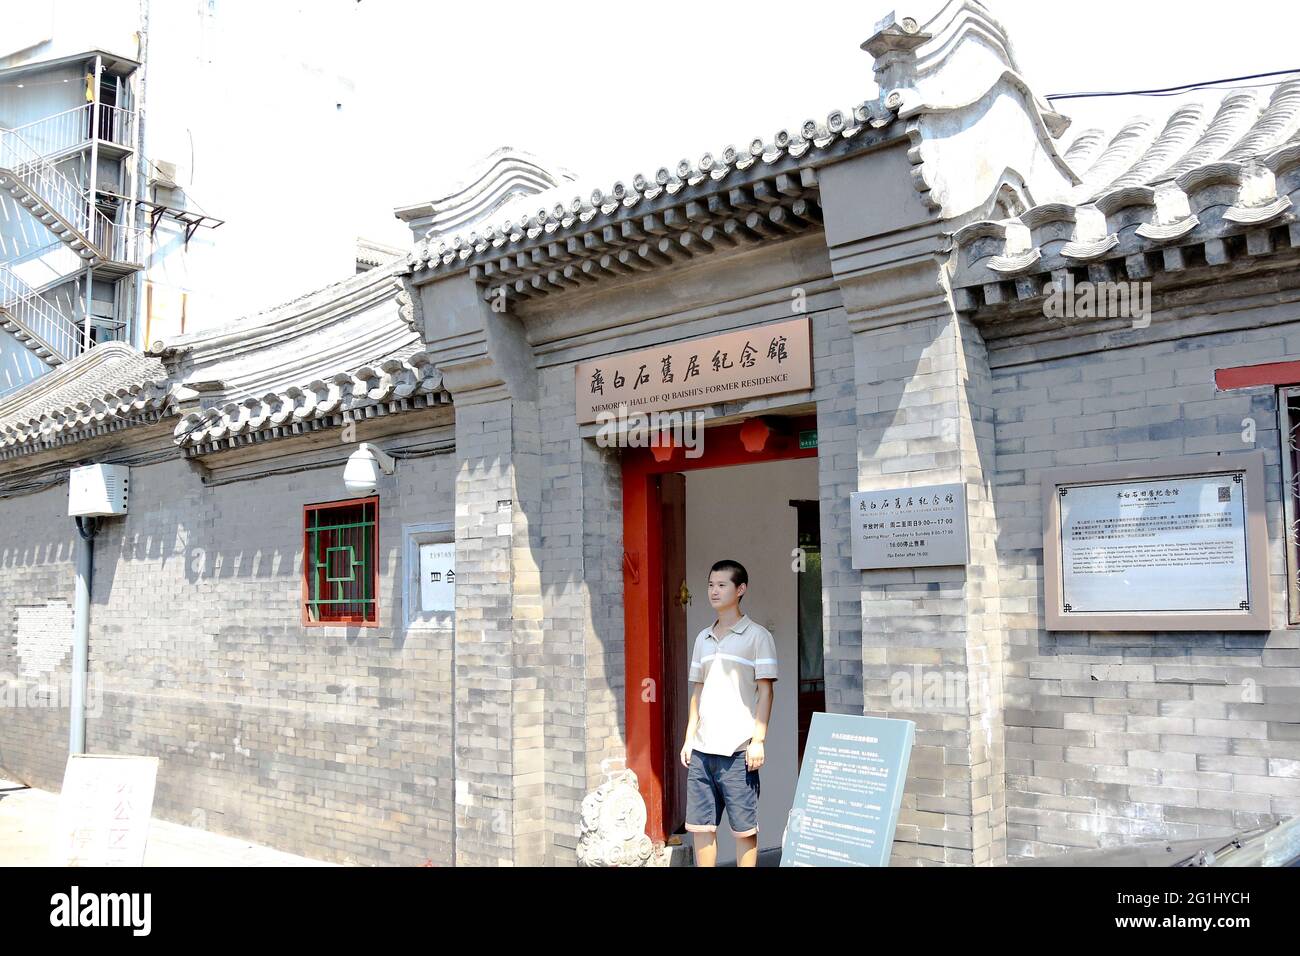 Ingresso alla casa e alle officine dell'artista cinese Qi Baishi nel distretto di Xicheng di Pechino, Repubblica popolare Cinese. Foto Stock